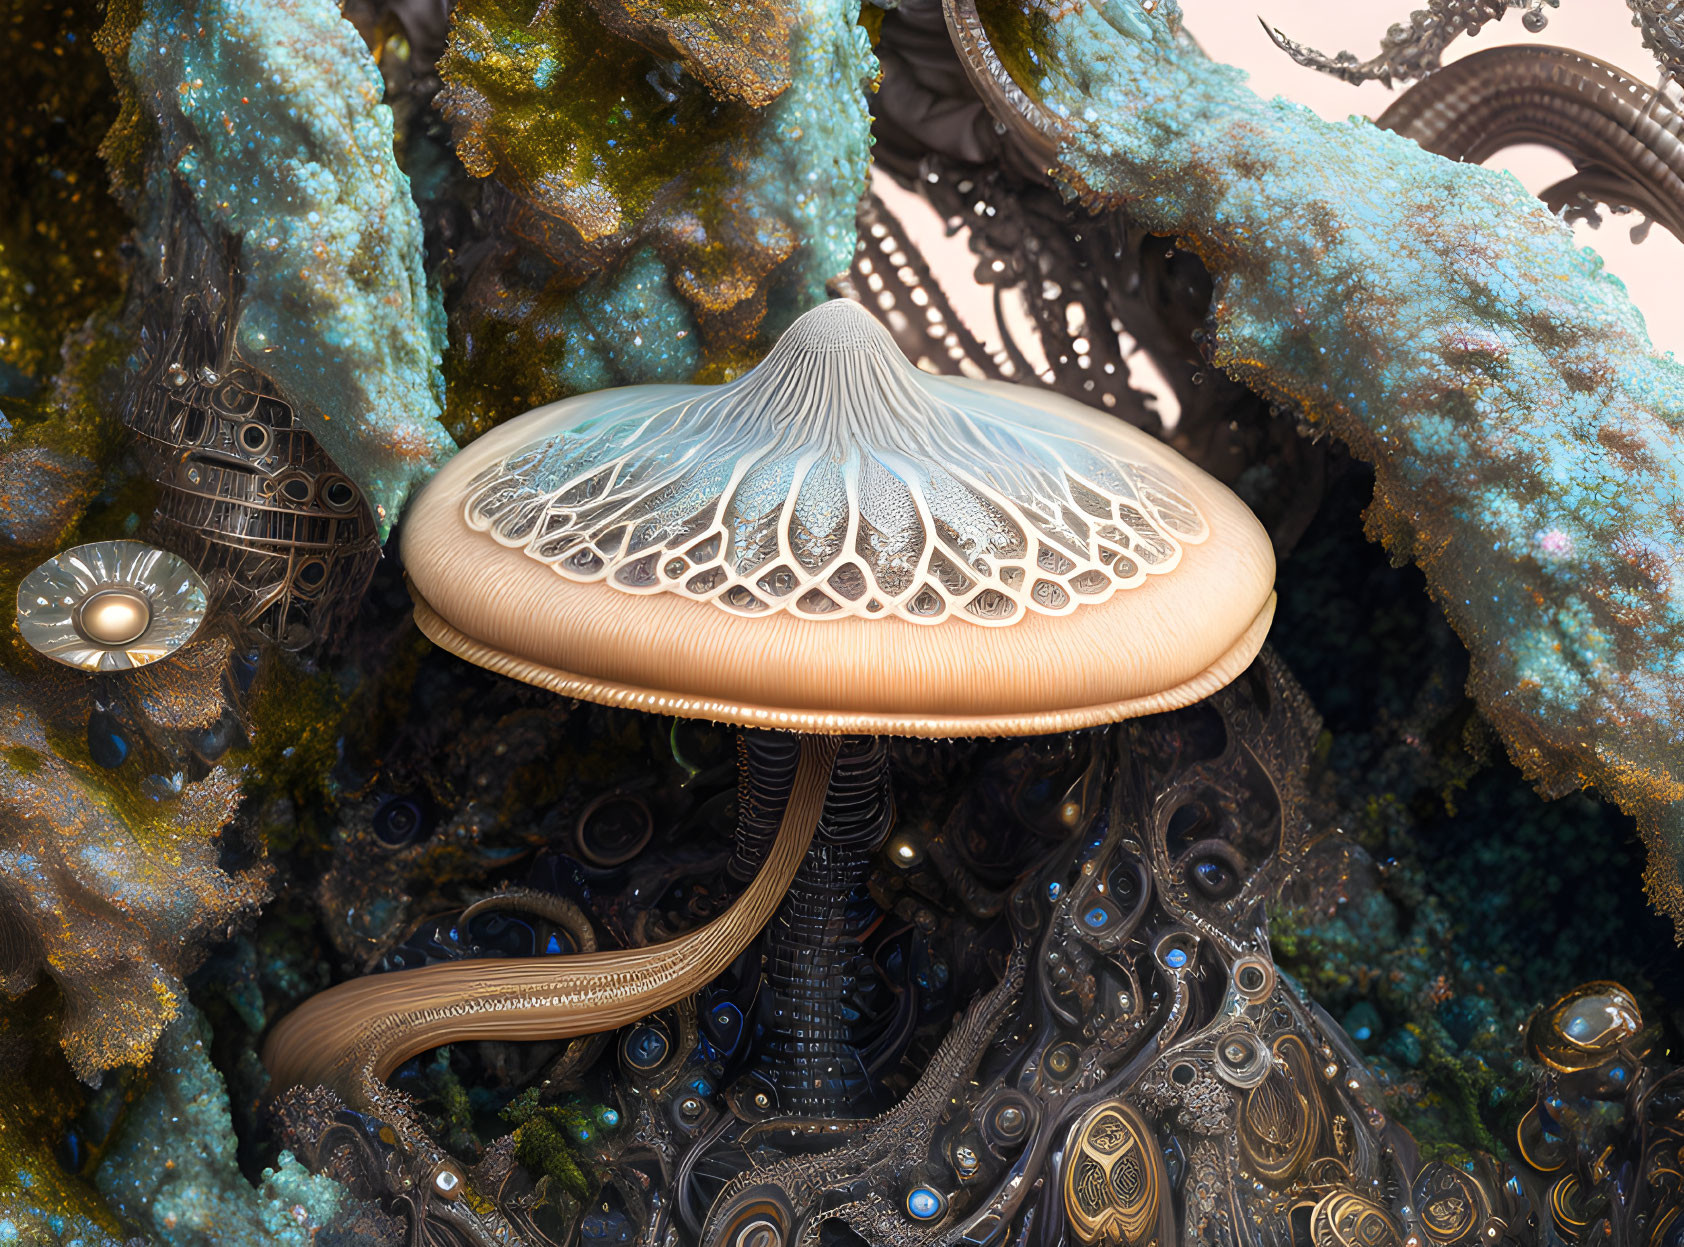 Surreal digital artwork: Jellyfish-like entity in steampunk setting